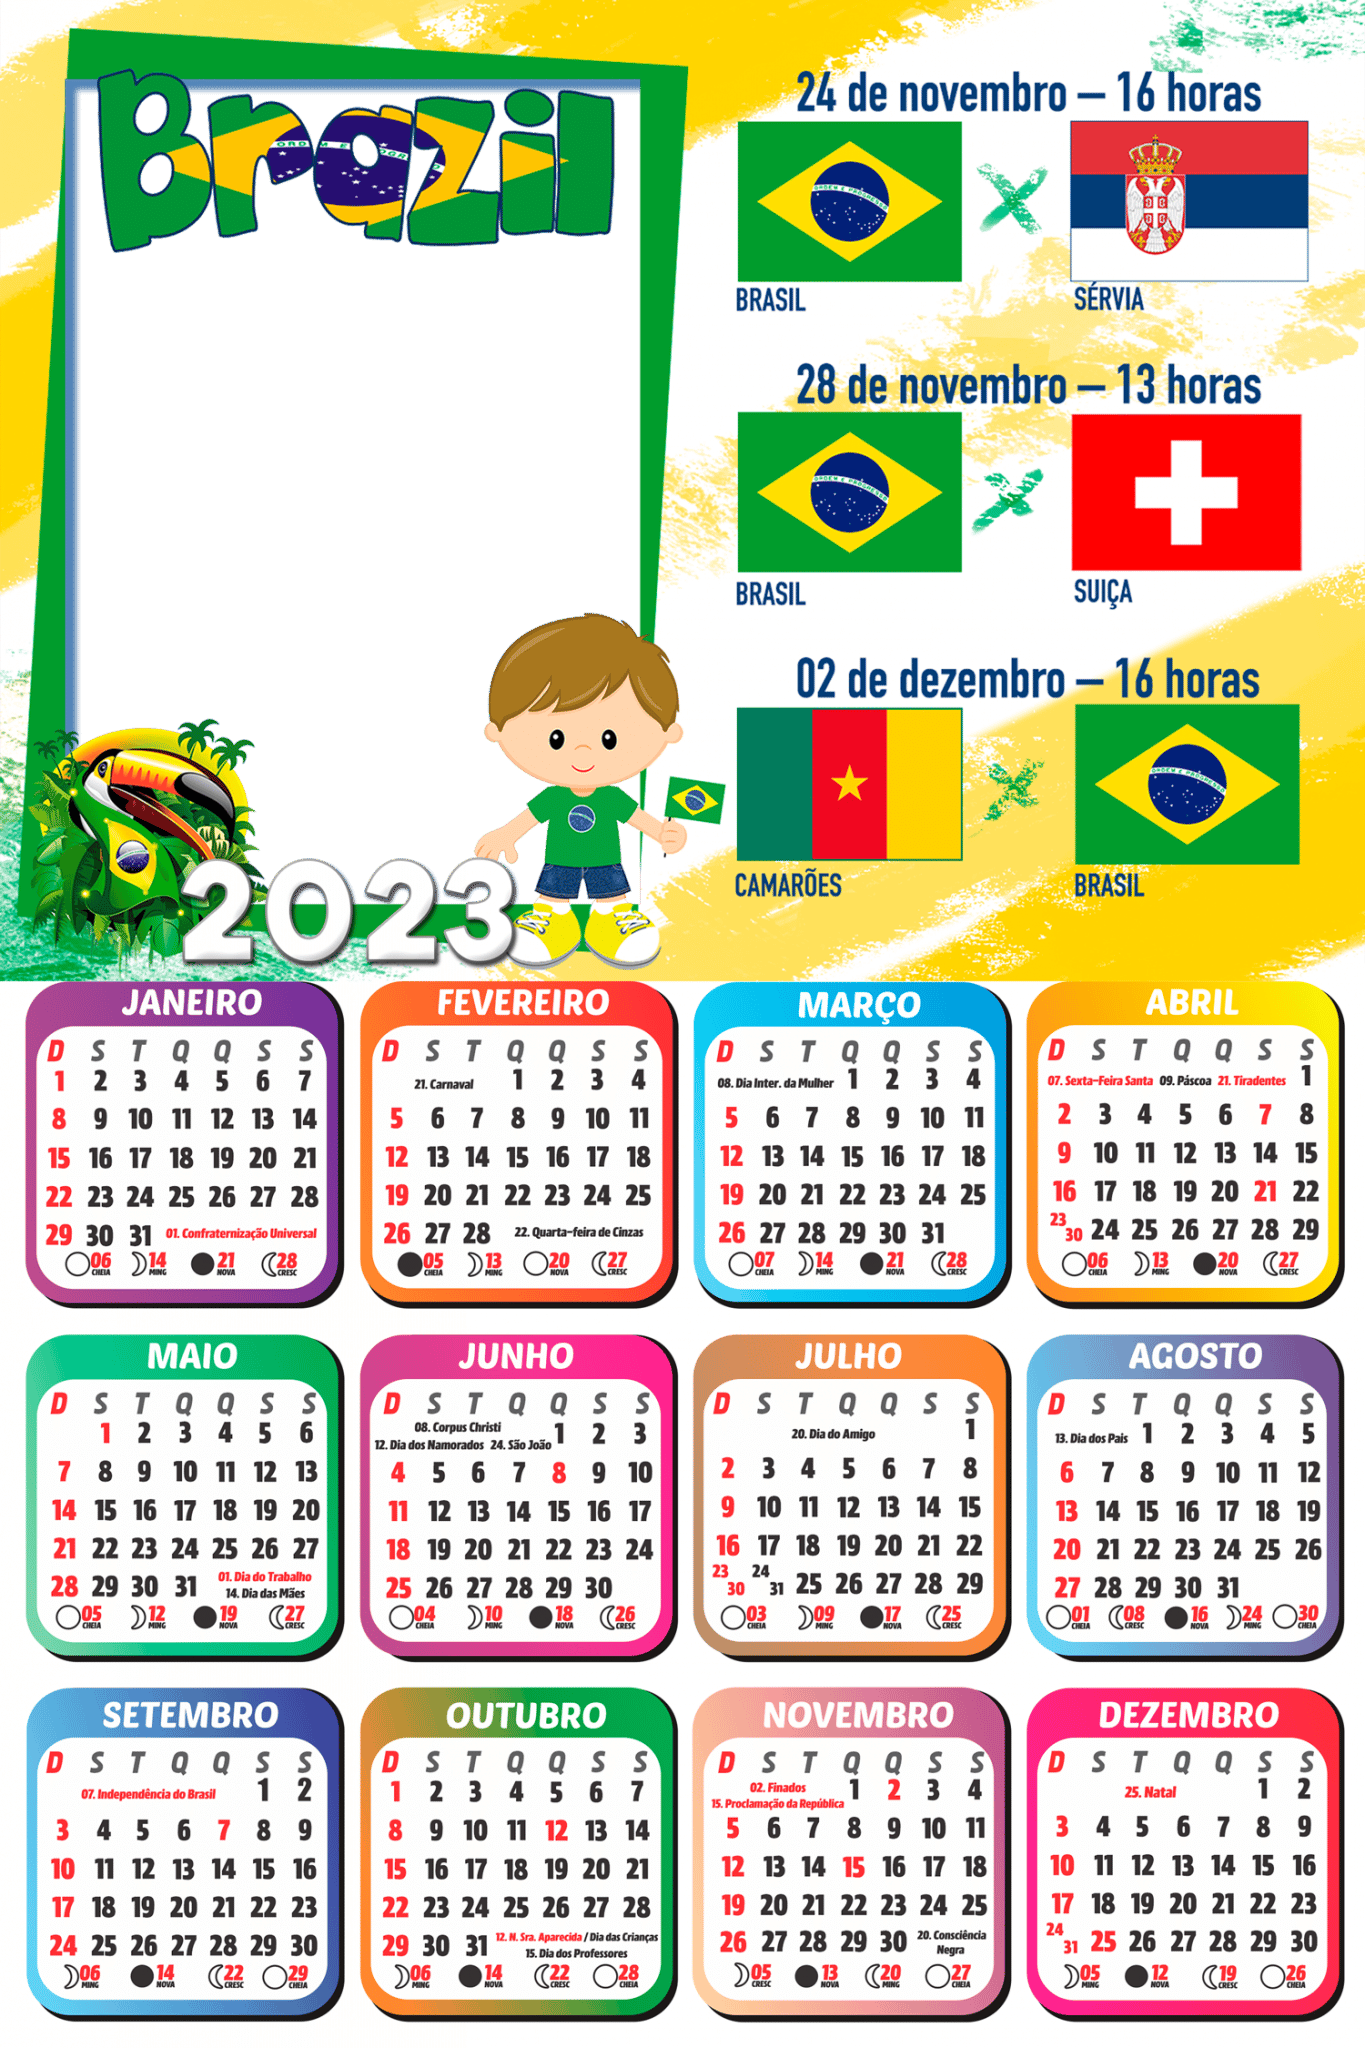 Calendário 2023 Jogos do Brasil Copa do Mundo Catar PNG - Imagem Legal,  copa do mundo jogos 2023 